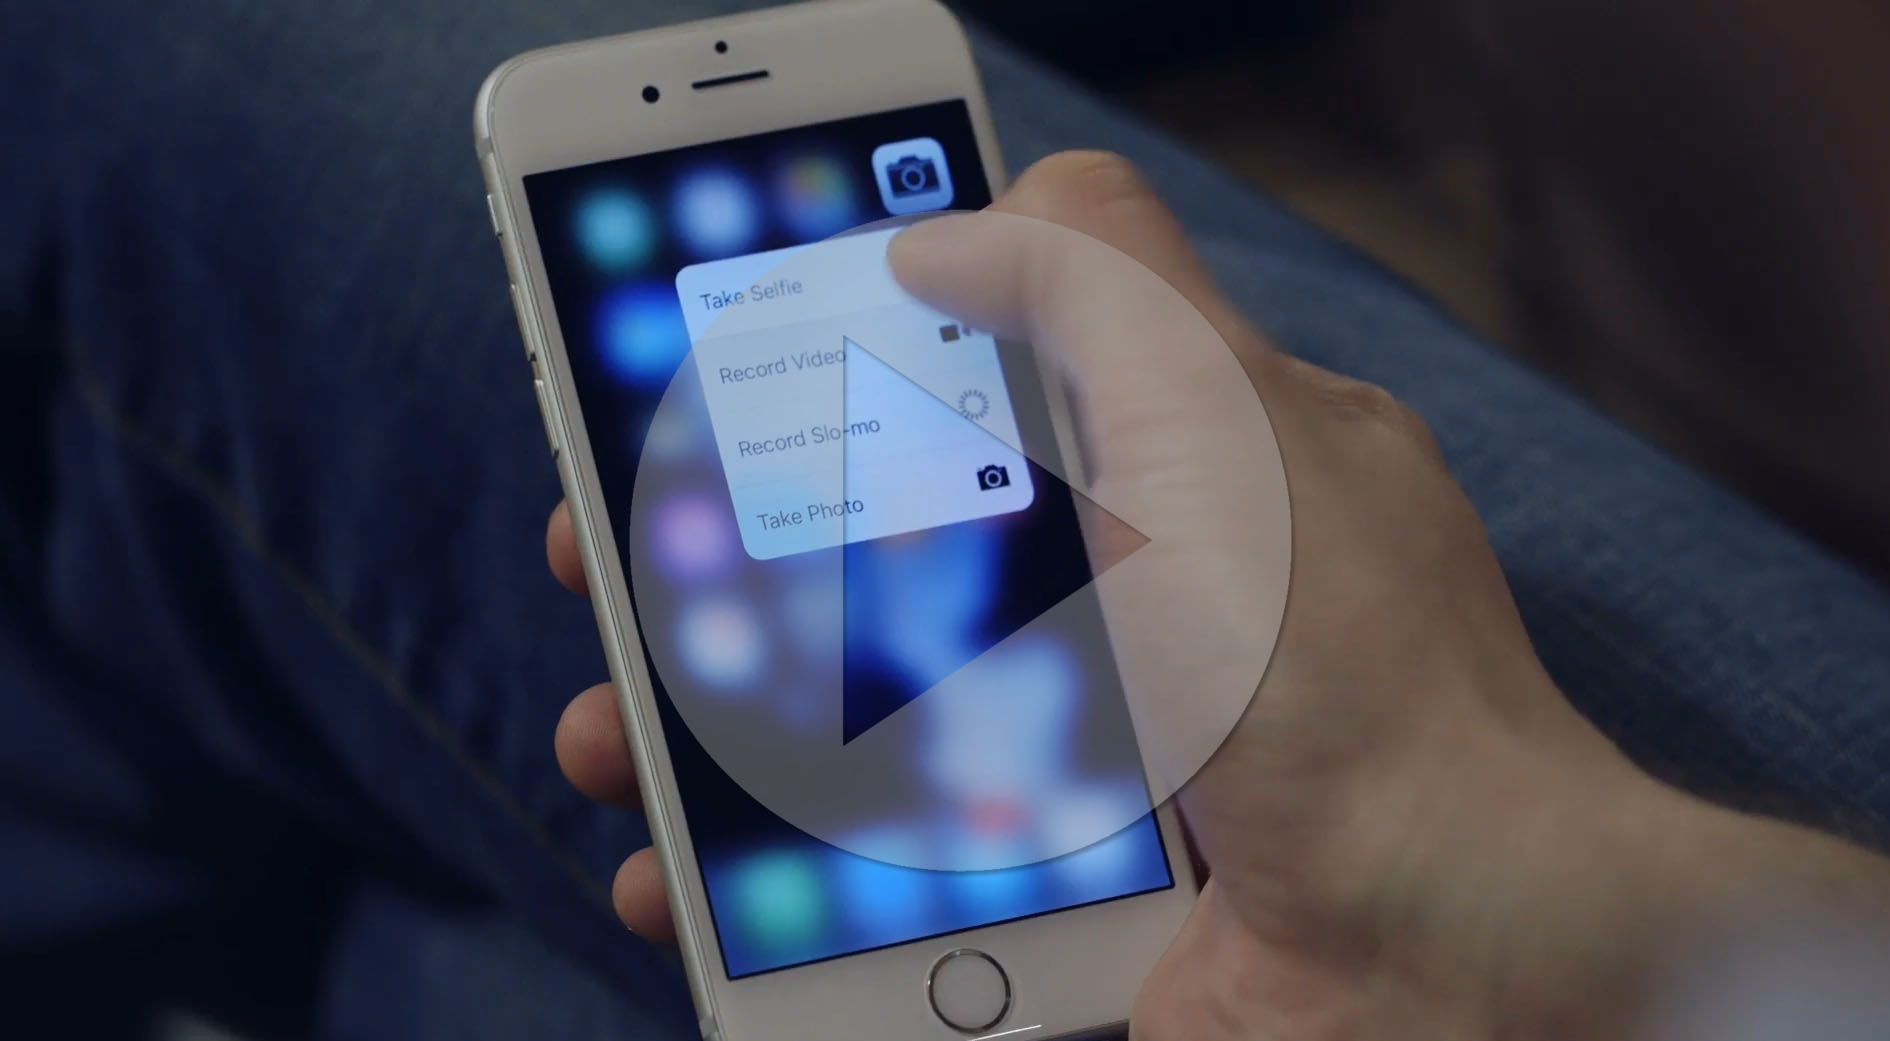 Čo všetko dokáže 3D Touch na iPhonoch 6S? Sledujte video!